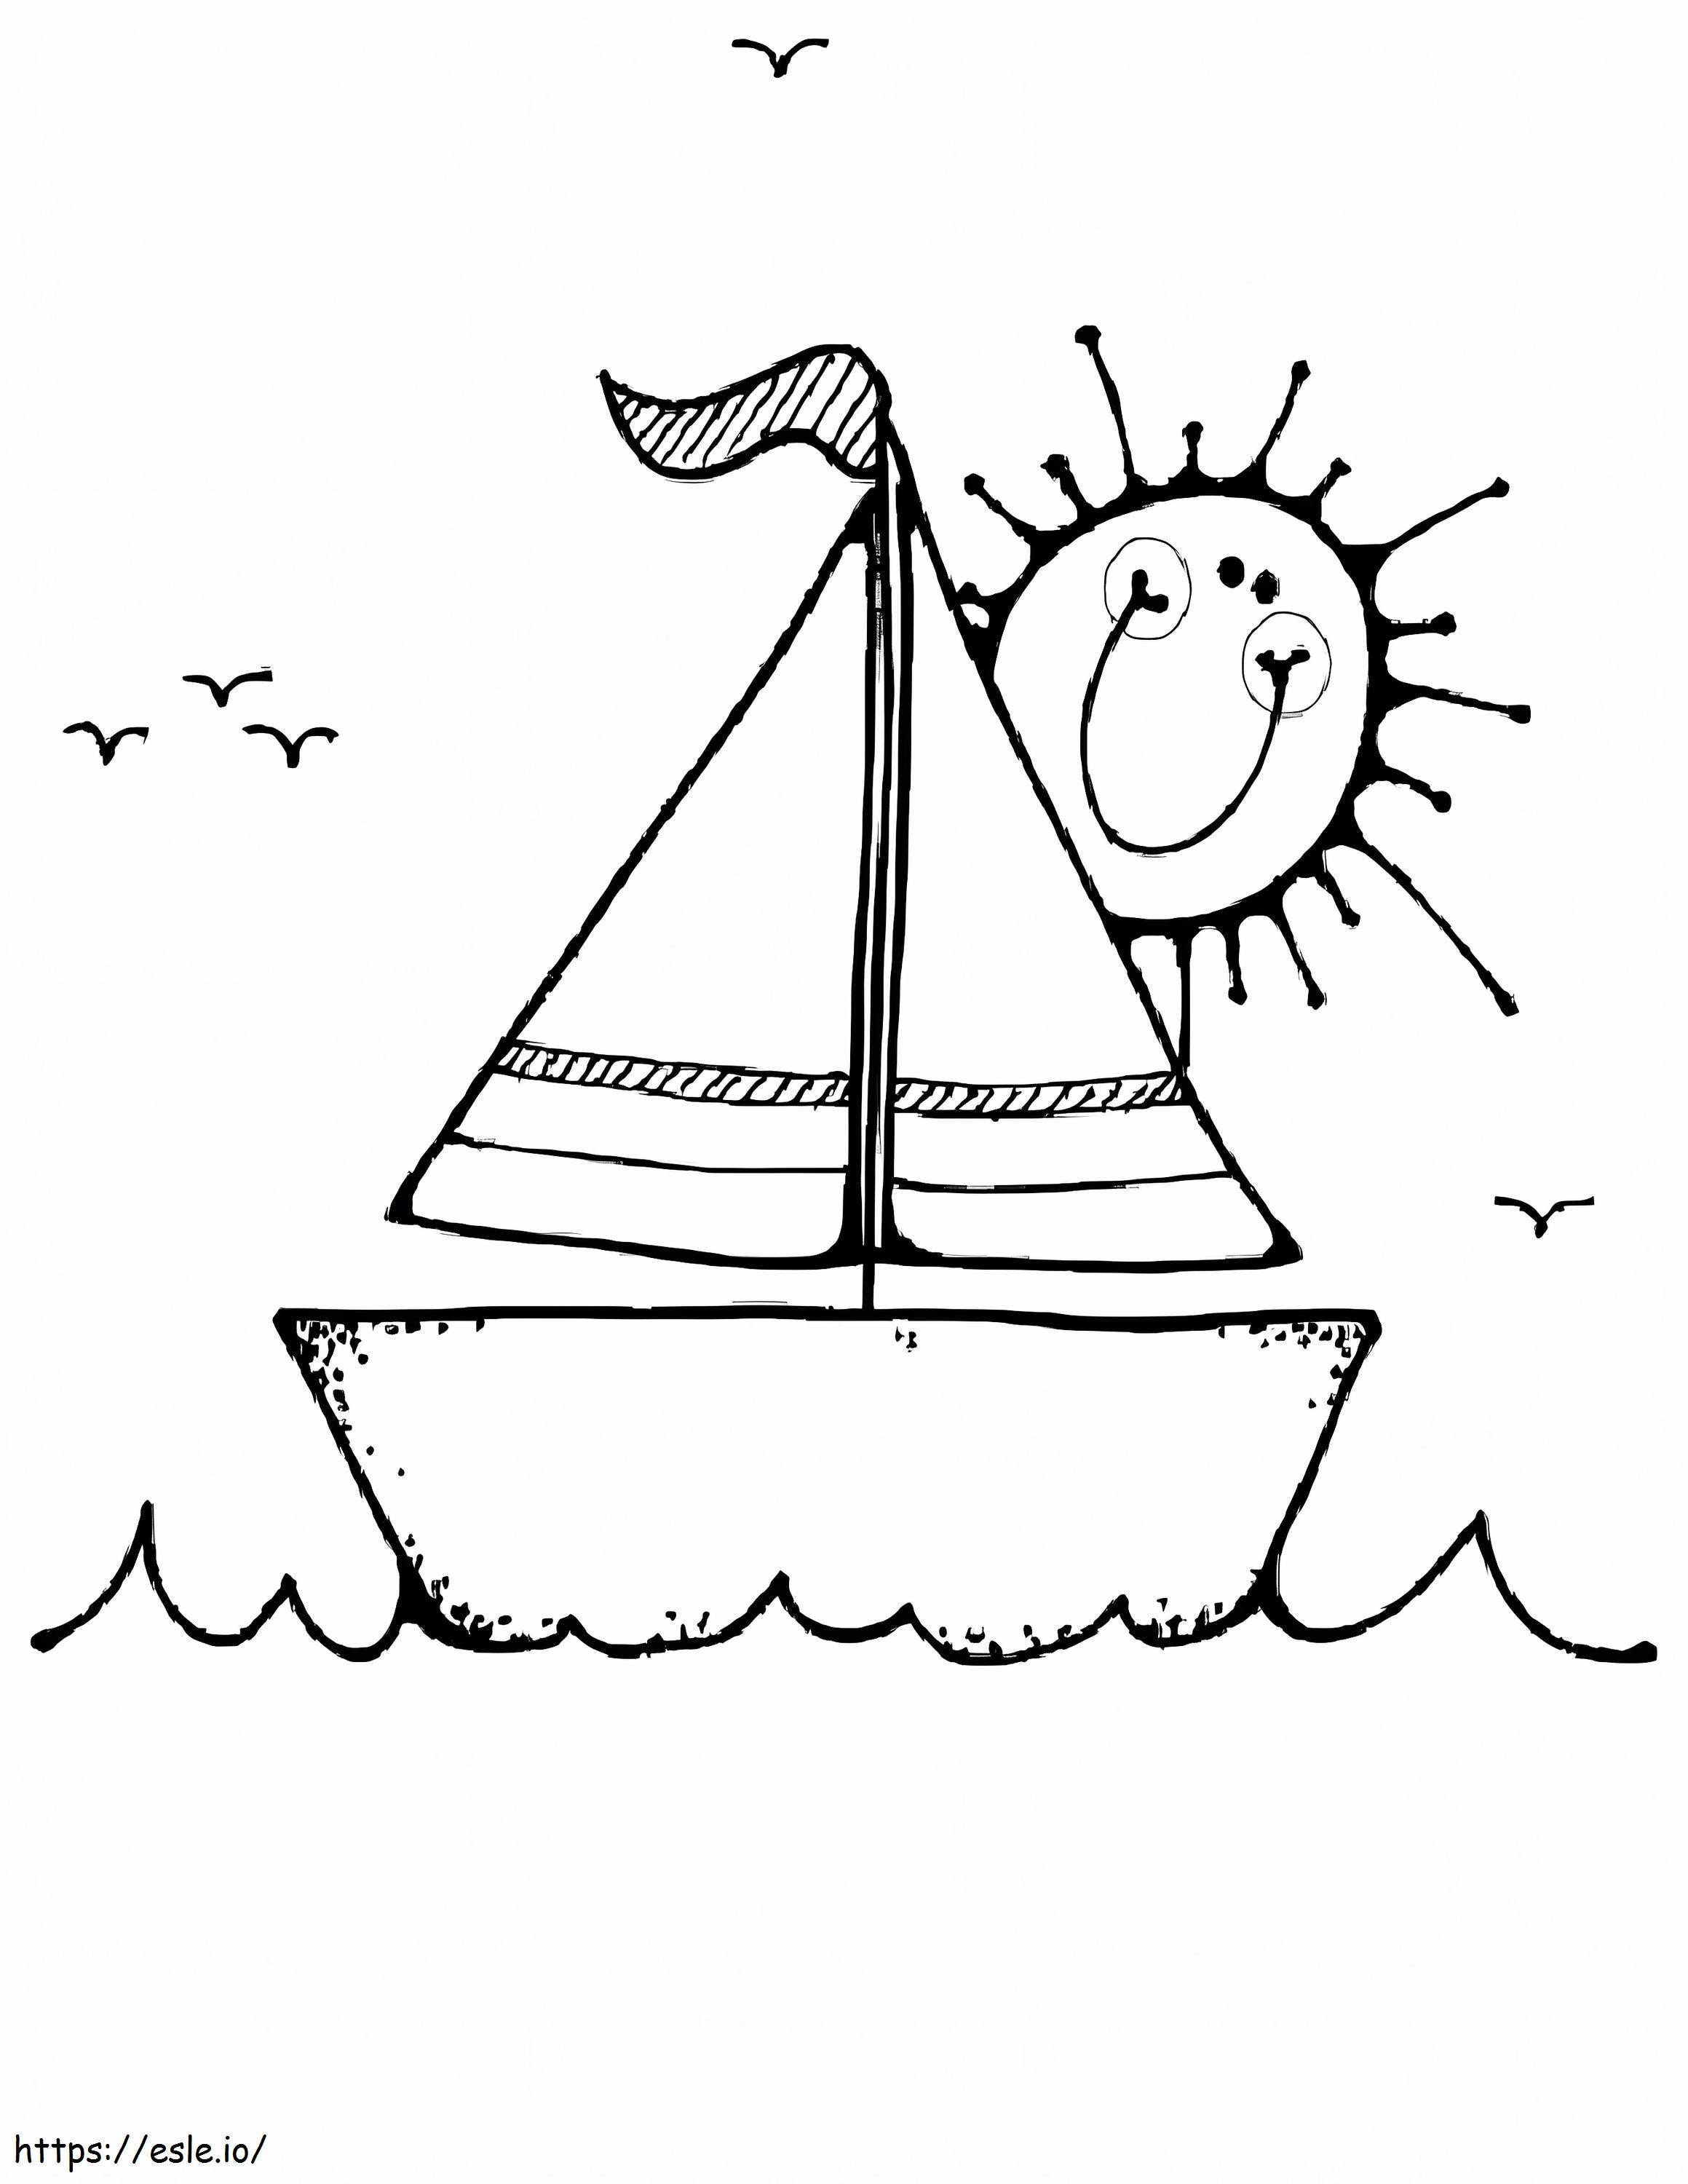 Süße Sonne und Segelboot ausmalbilder